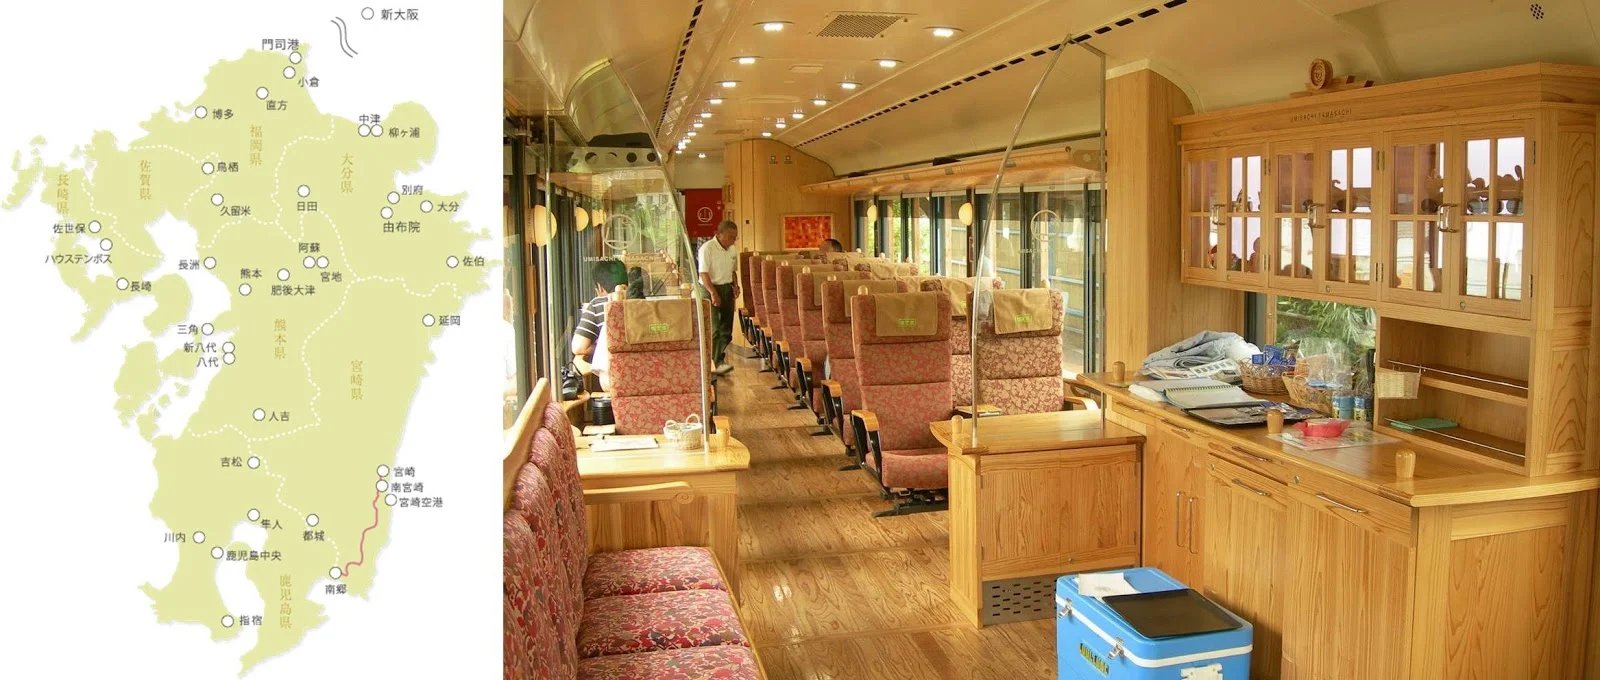 九州-特色觀光列車-推薦-D&S列車-山幸海幸-攻略-特色列車預訂-觀光列車-火車-JR-交通-Kyushu